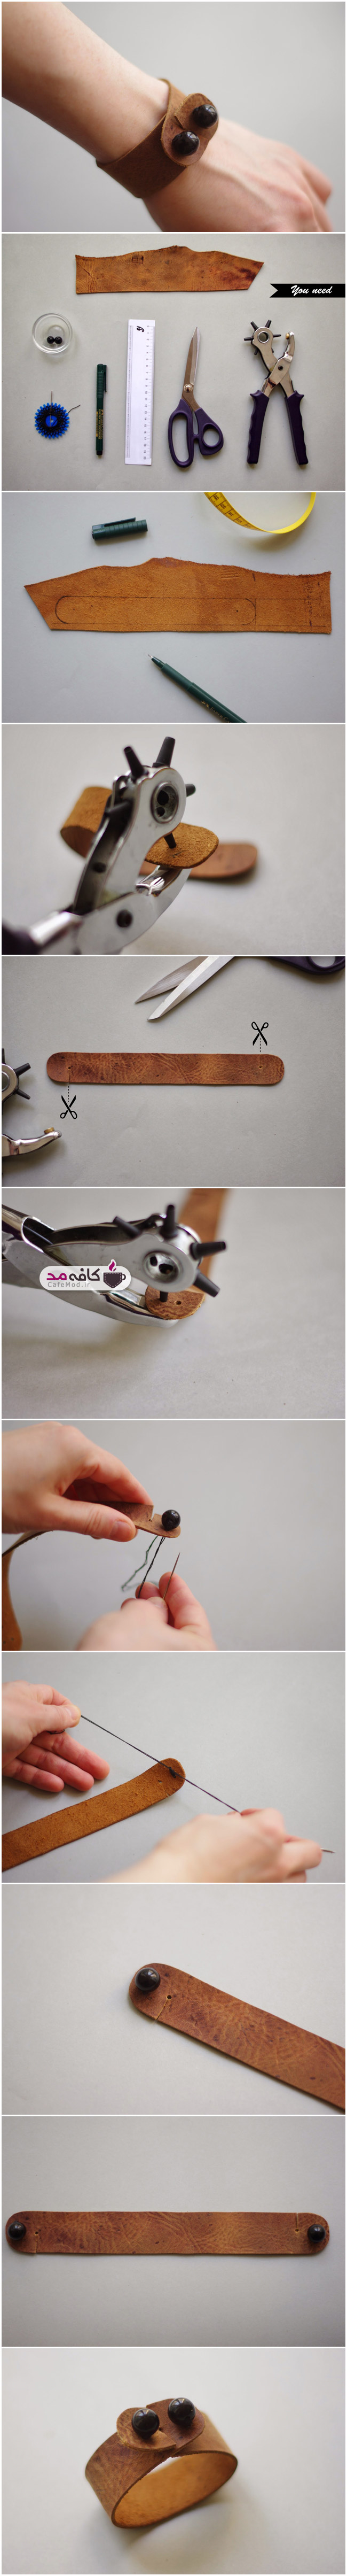 آموزش تصویری درست کردن دستبند زیبای چرمی